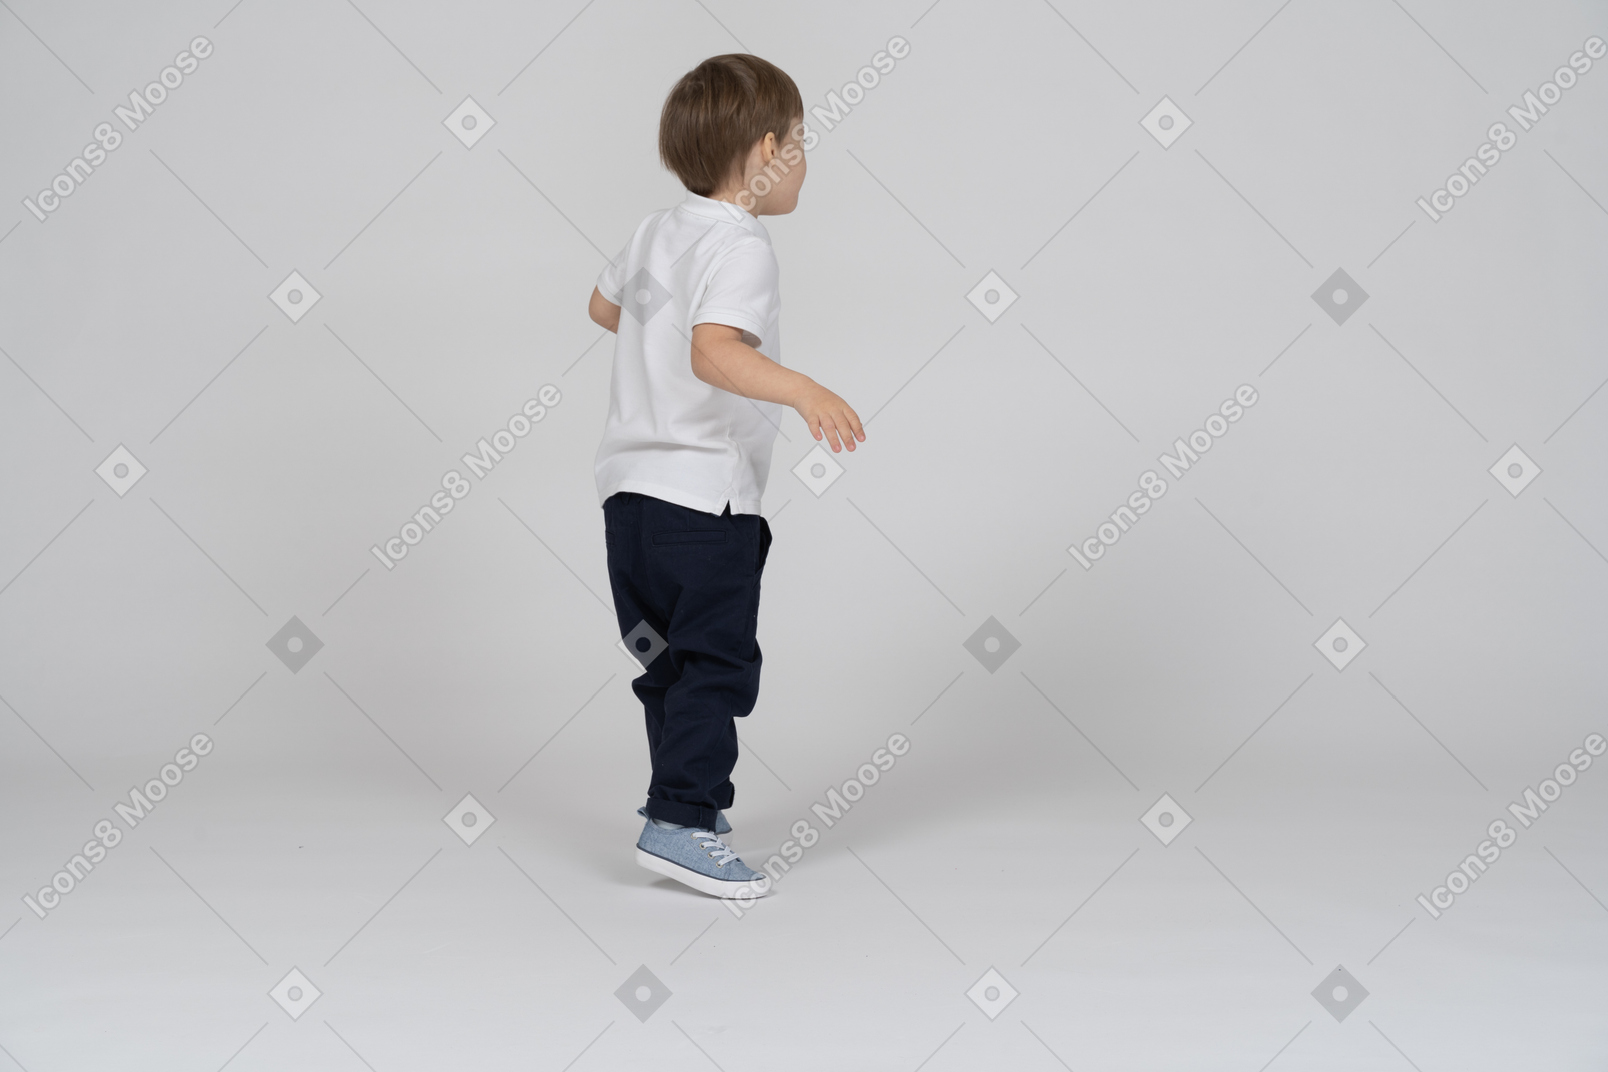 Vista traseira de um menino de pé com os braços dobrados